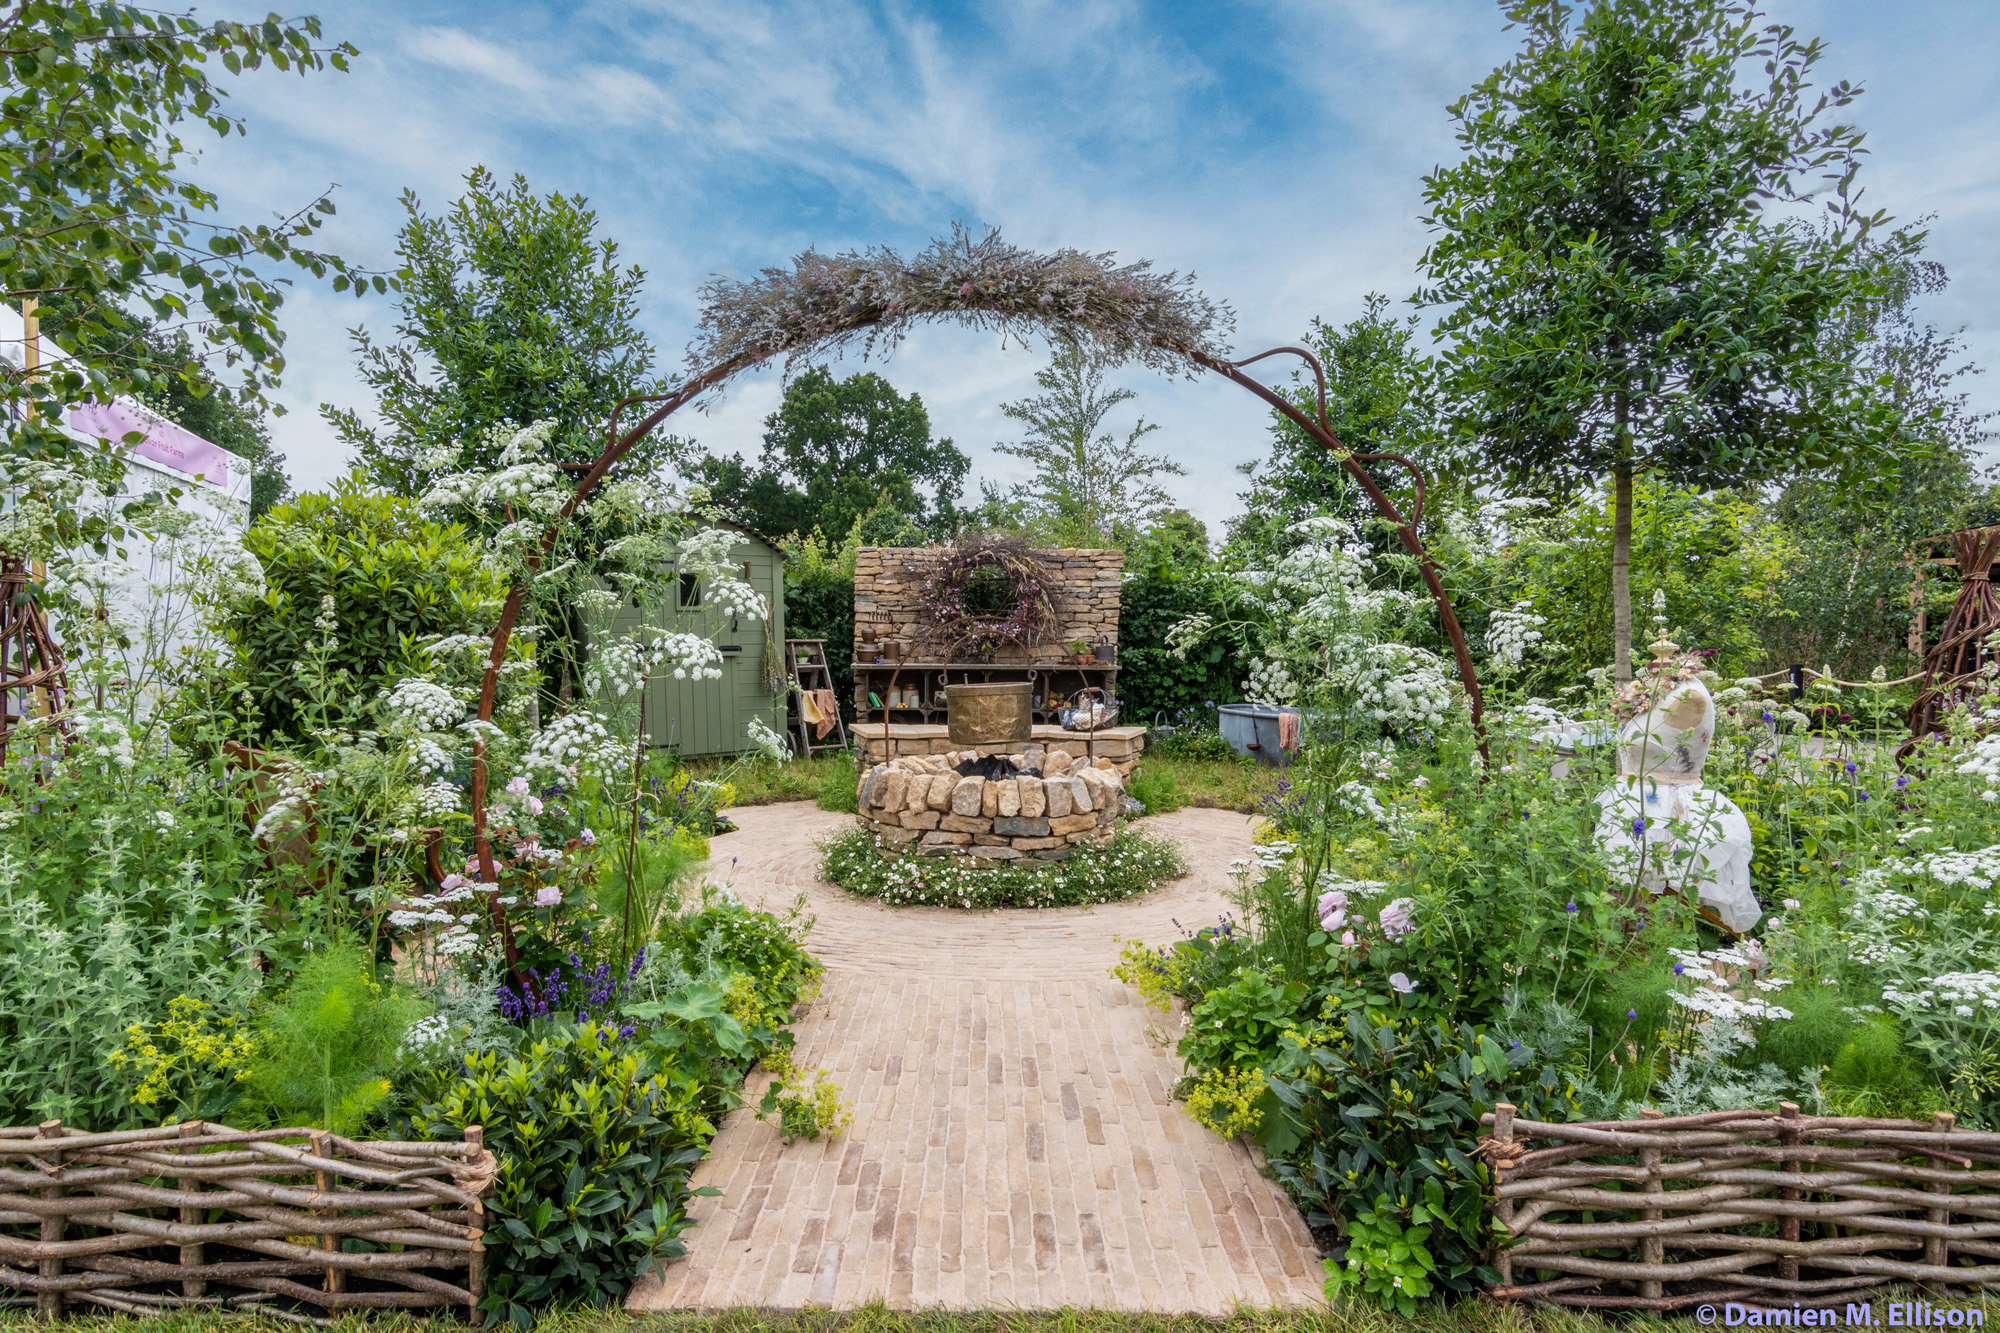 RHS Hampton Court Flower Show by Pollyanna Wilkinson - contemporary landscape and garden design in London